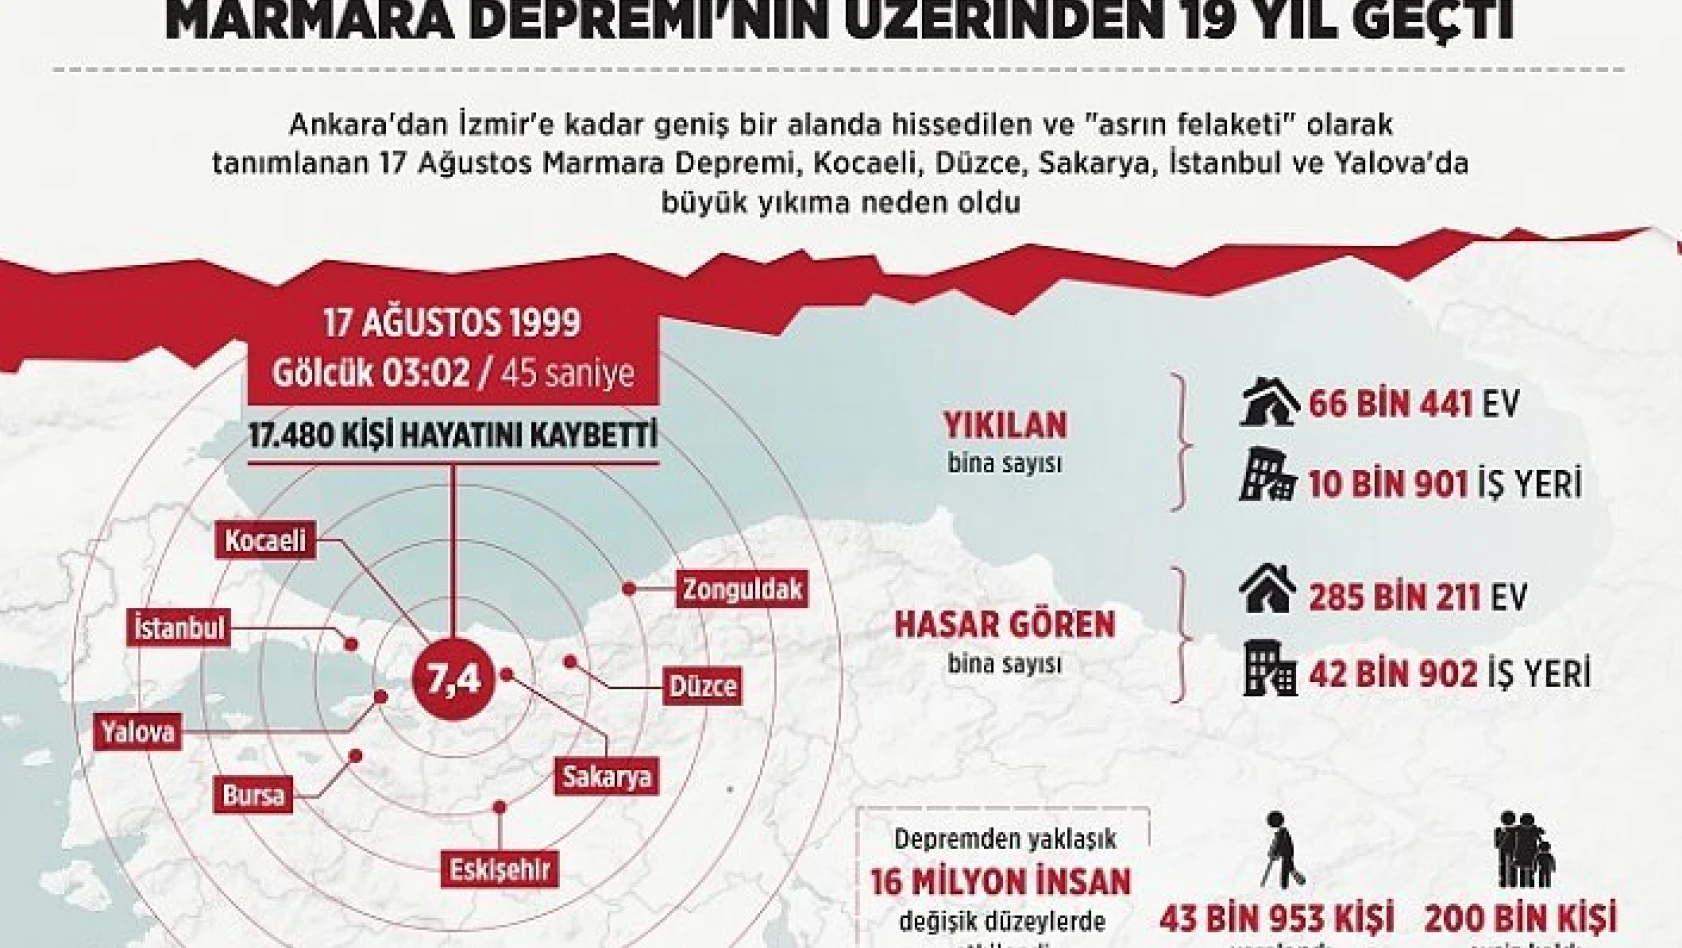 Marmara Depremi'nin üzerinden 19 yıl geçti